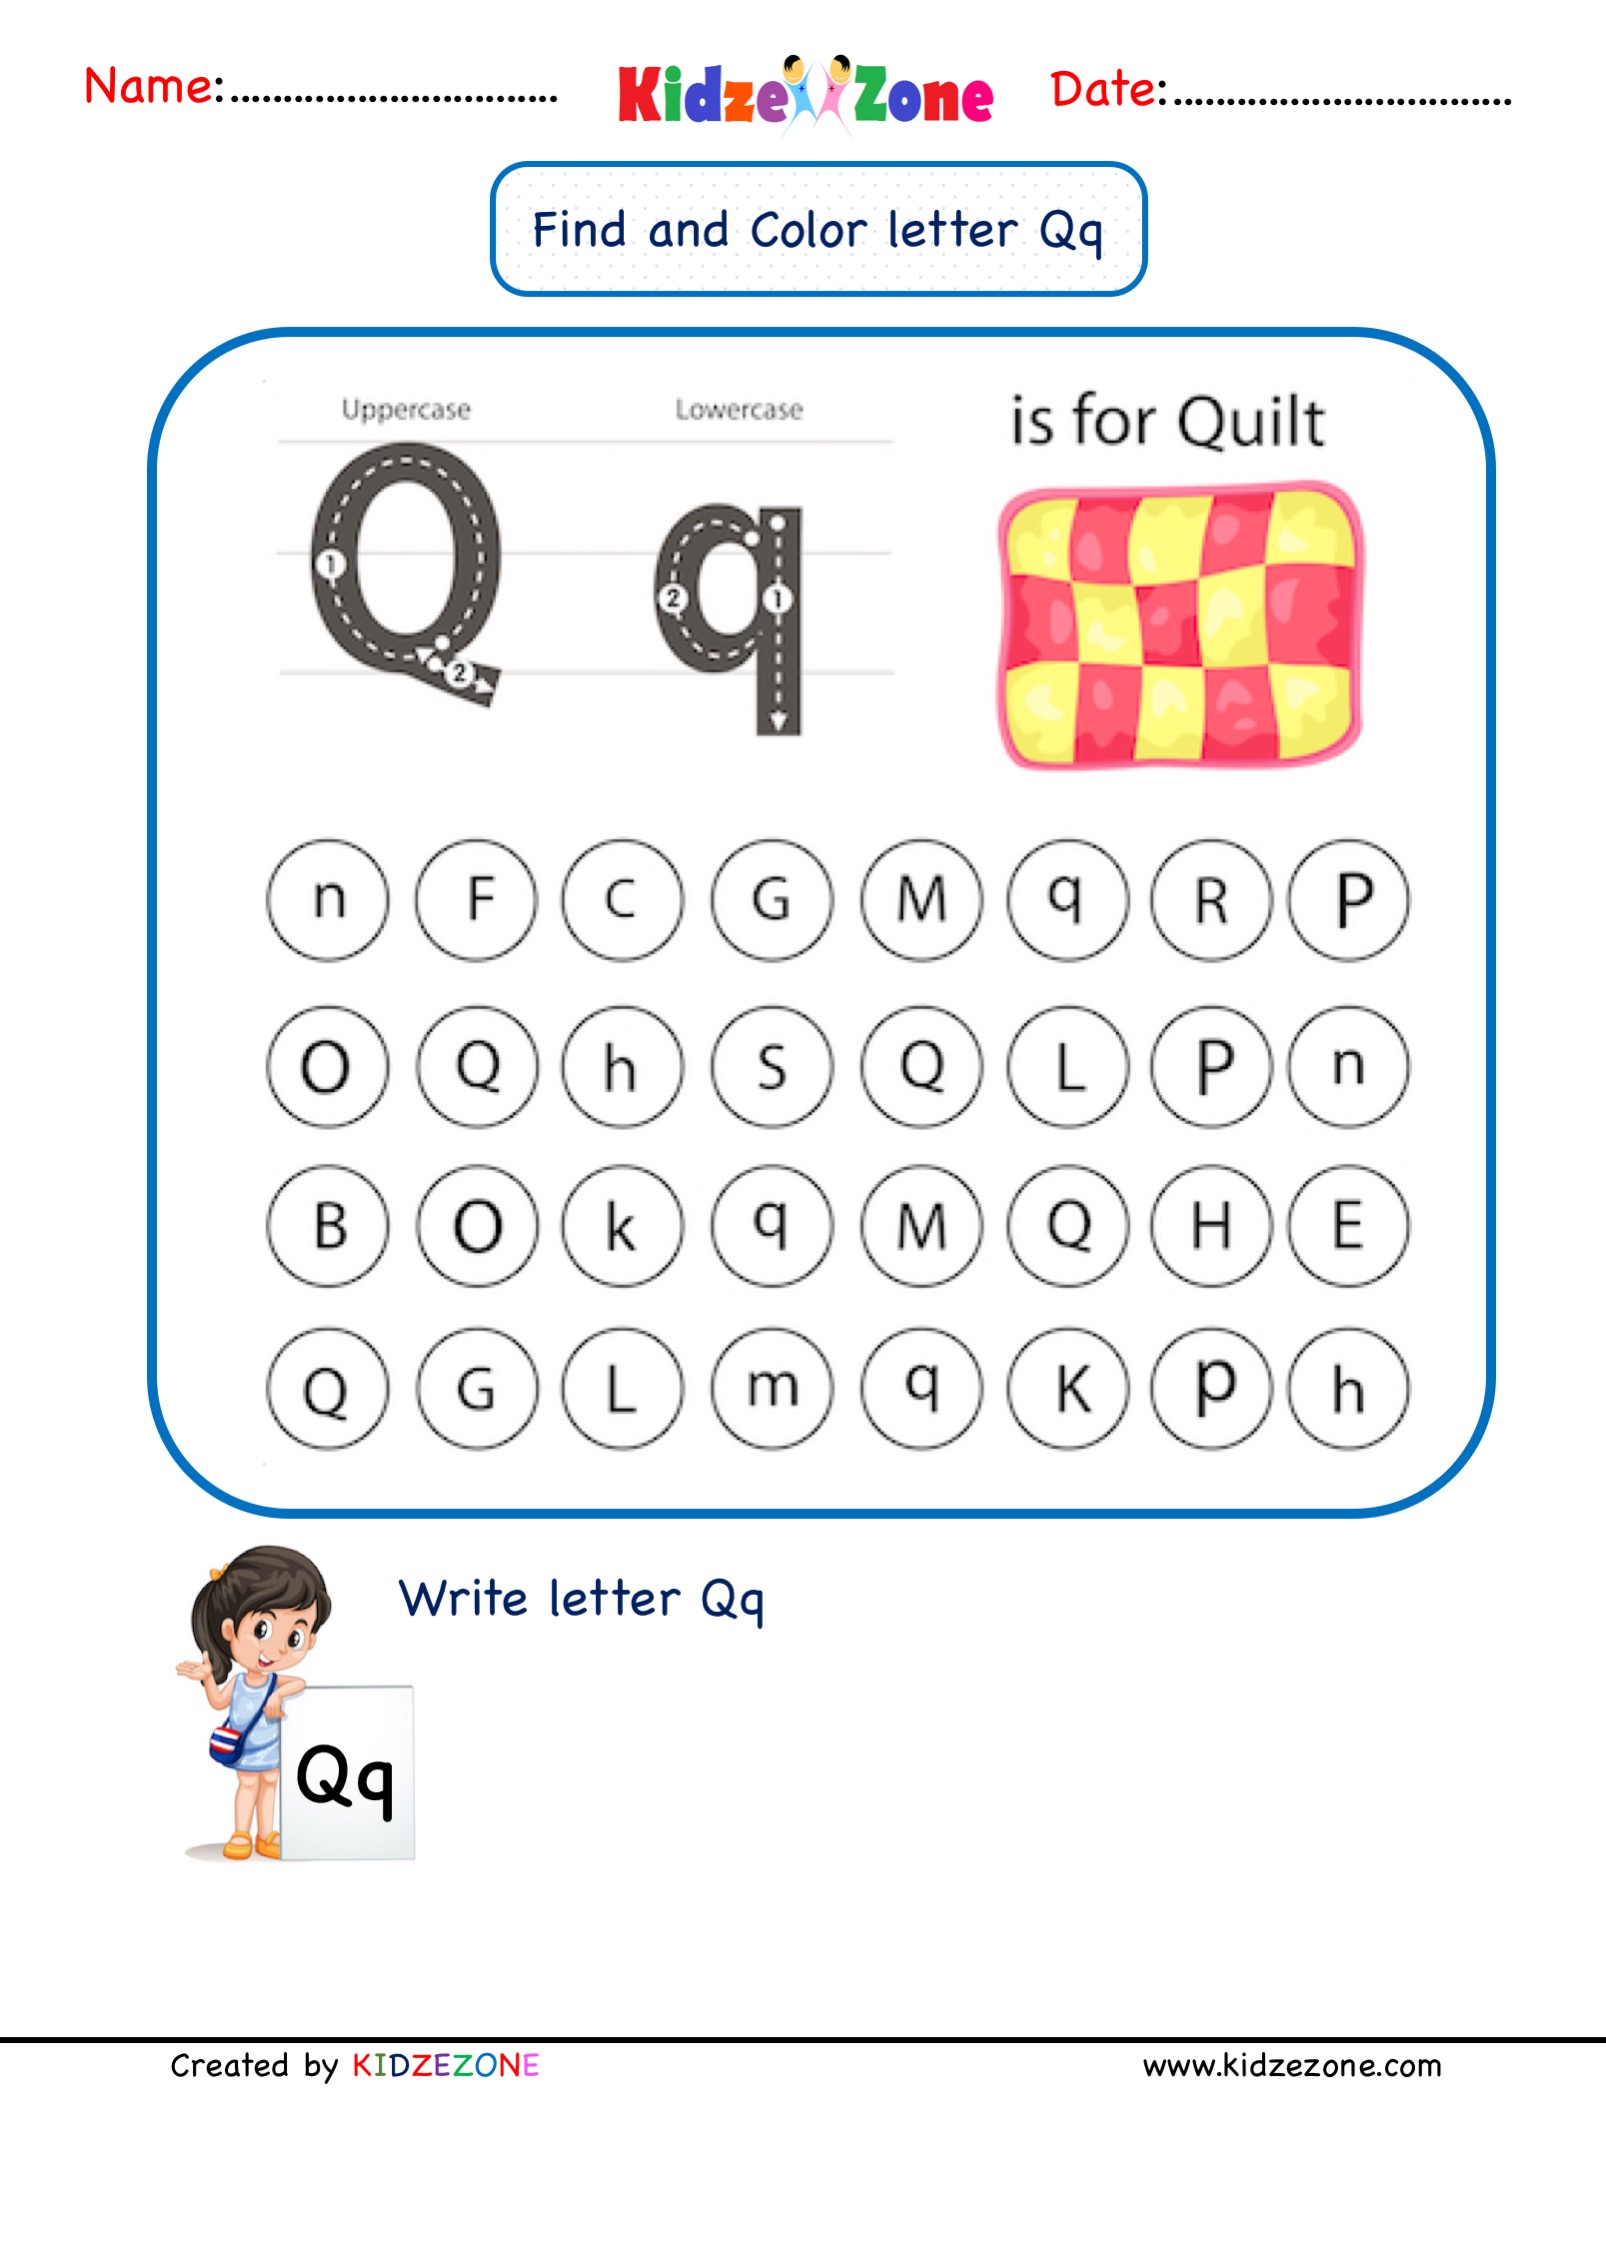 kindergarten-letter-q-worksheets-find-and-color-kidzezone